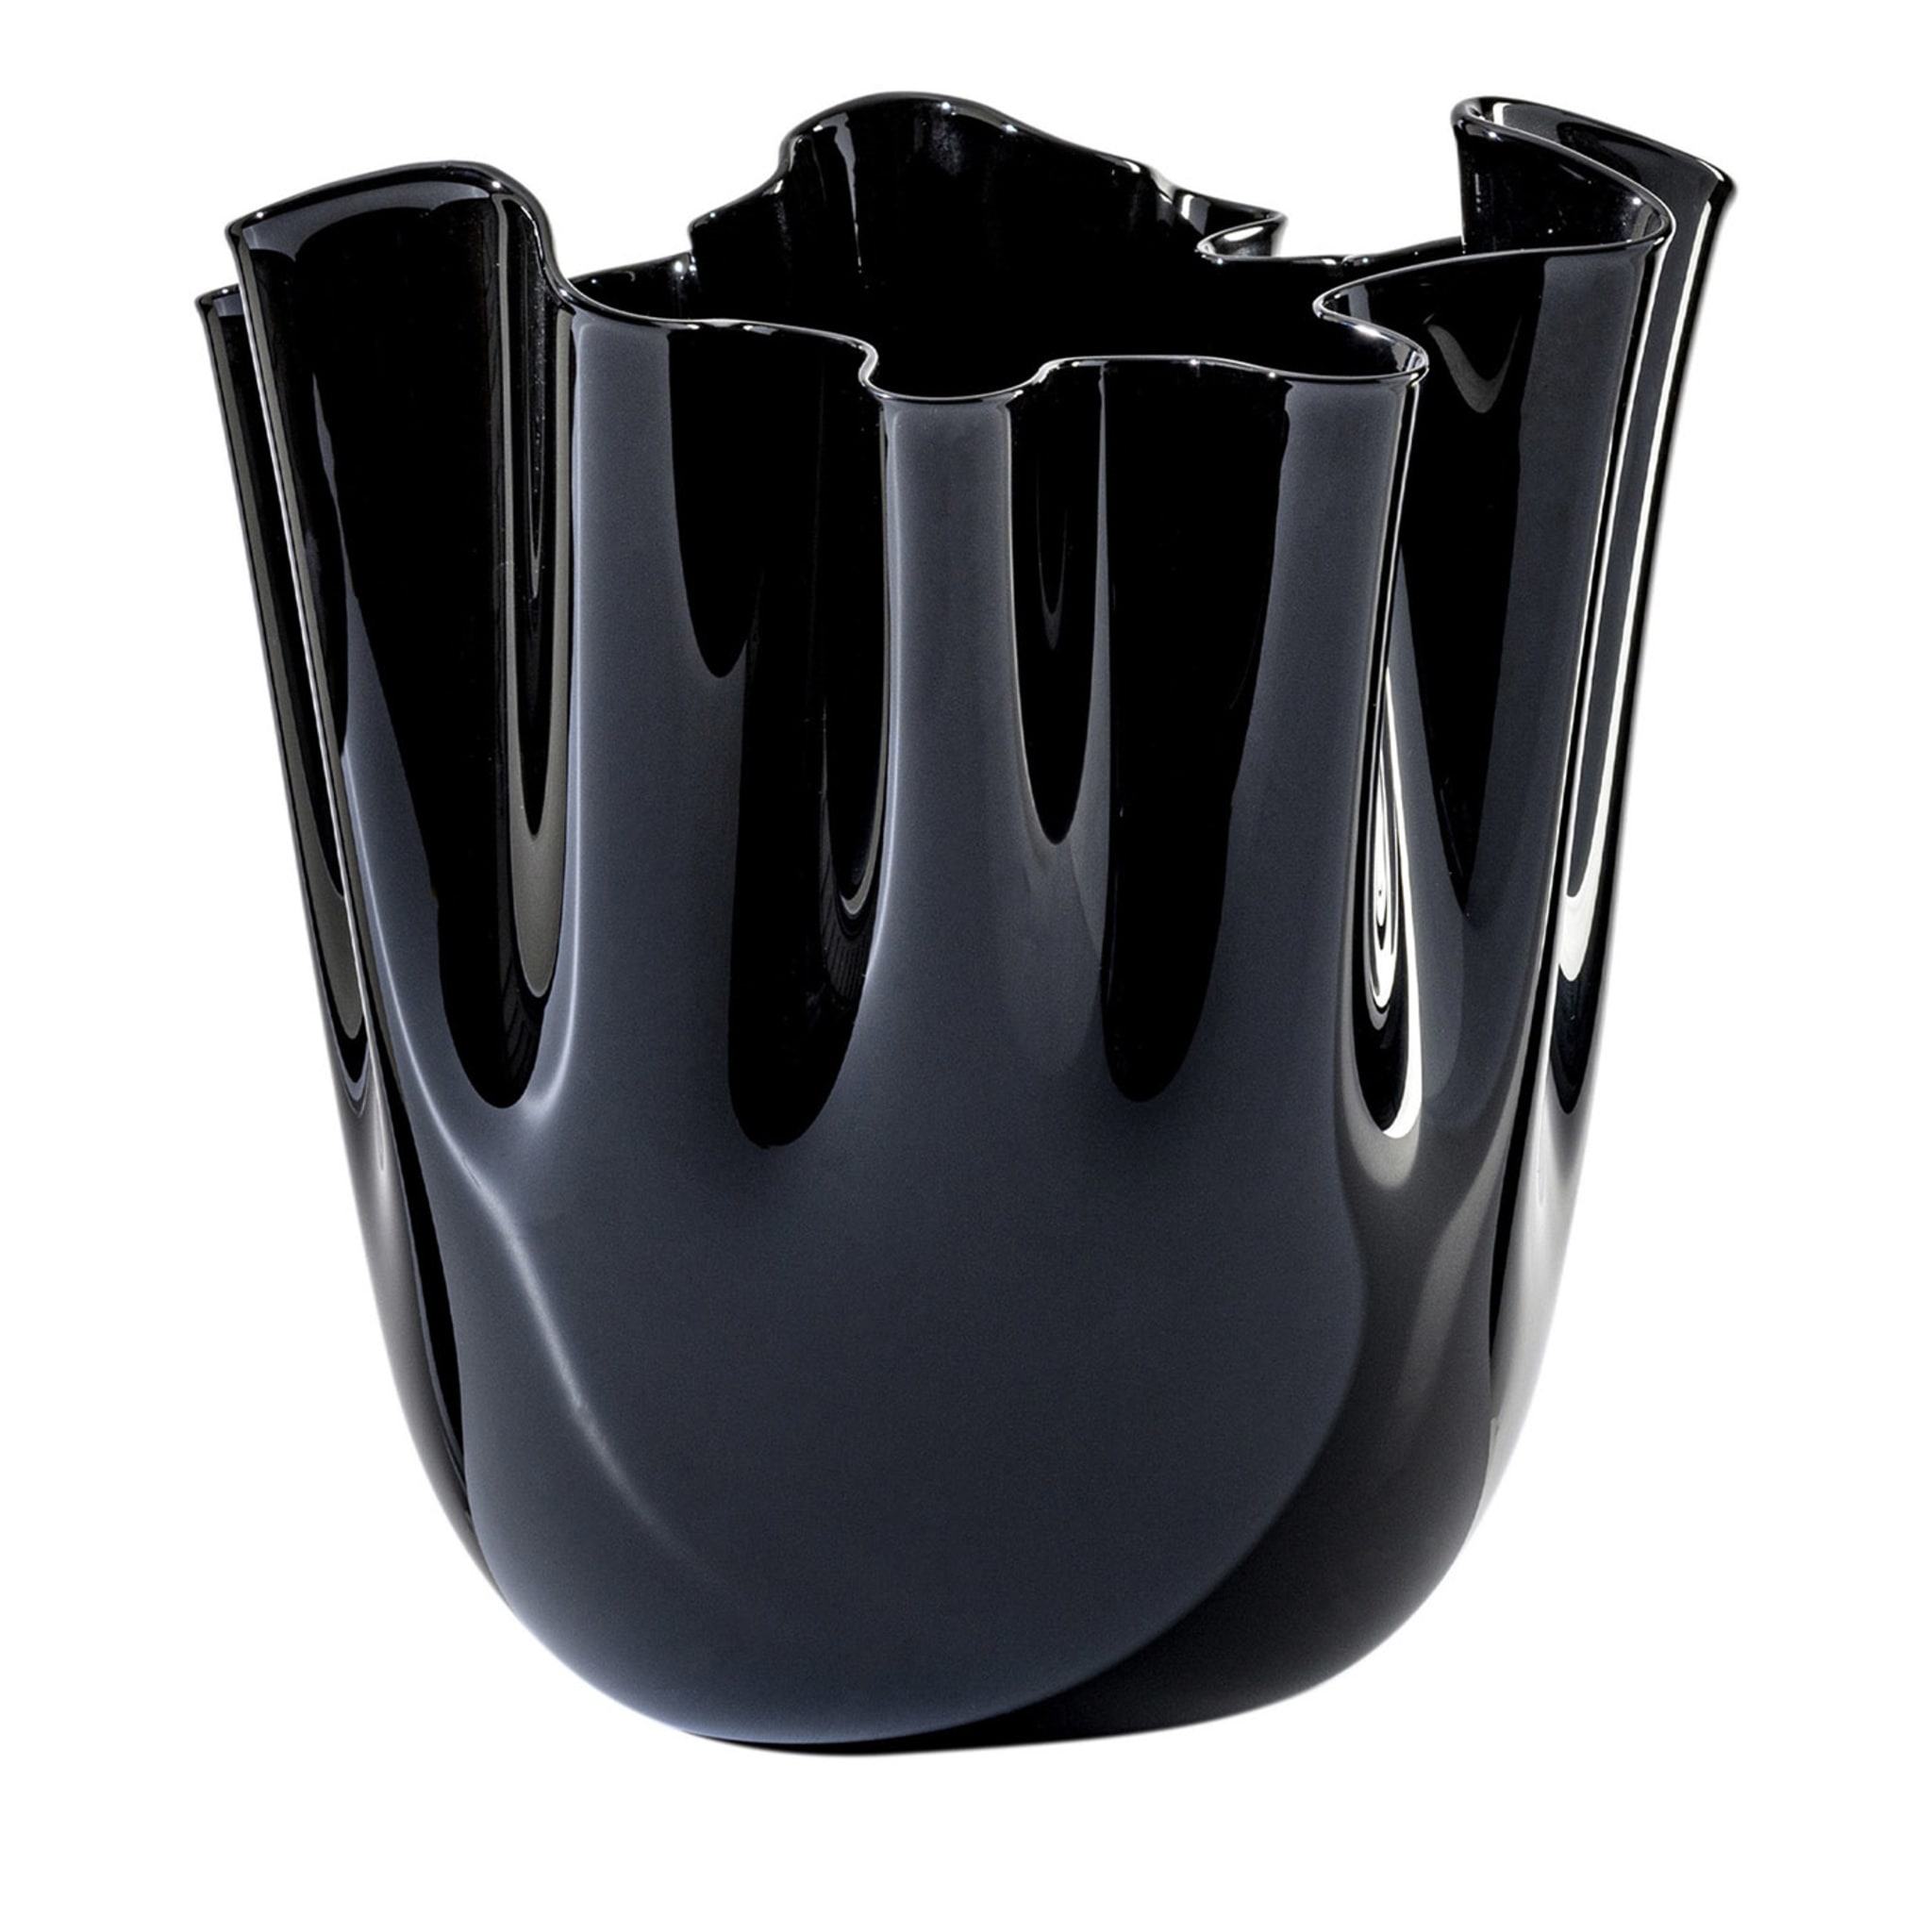 Fazzoletto Black Tall Vase by Paolo Venini and Fulvio Bianconi - Main view